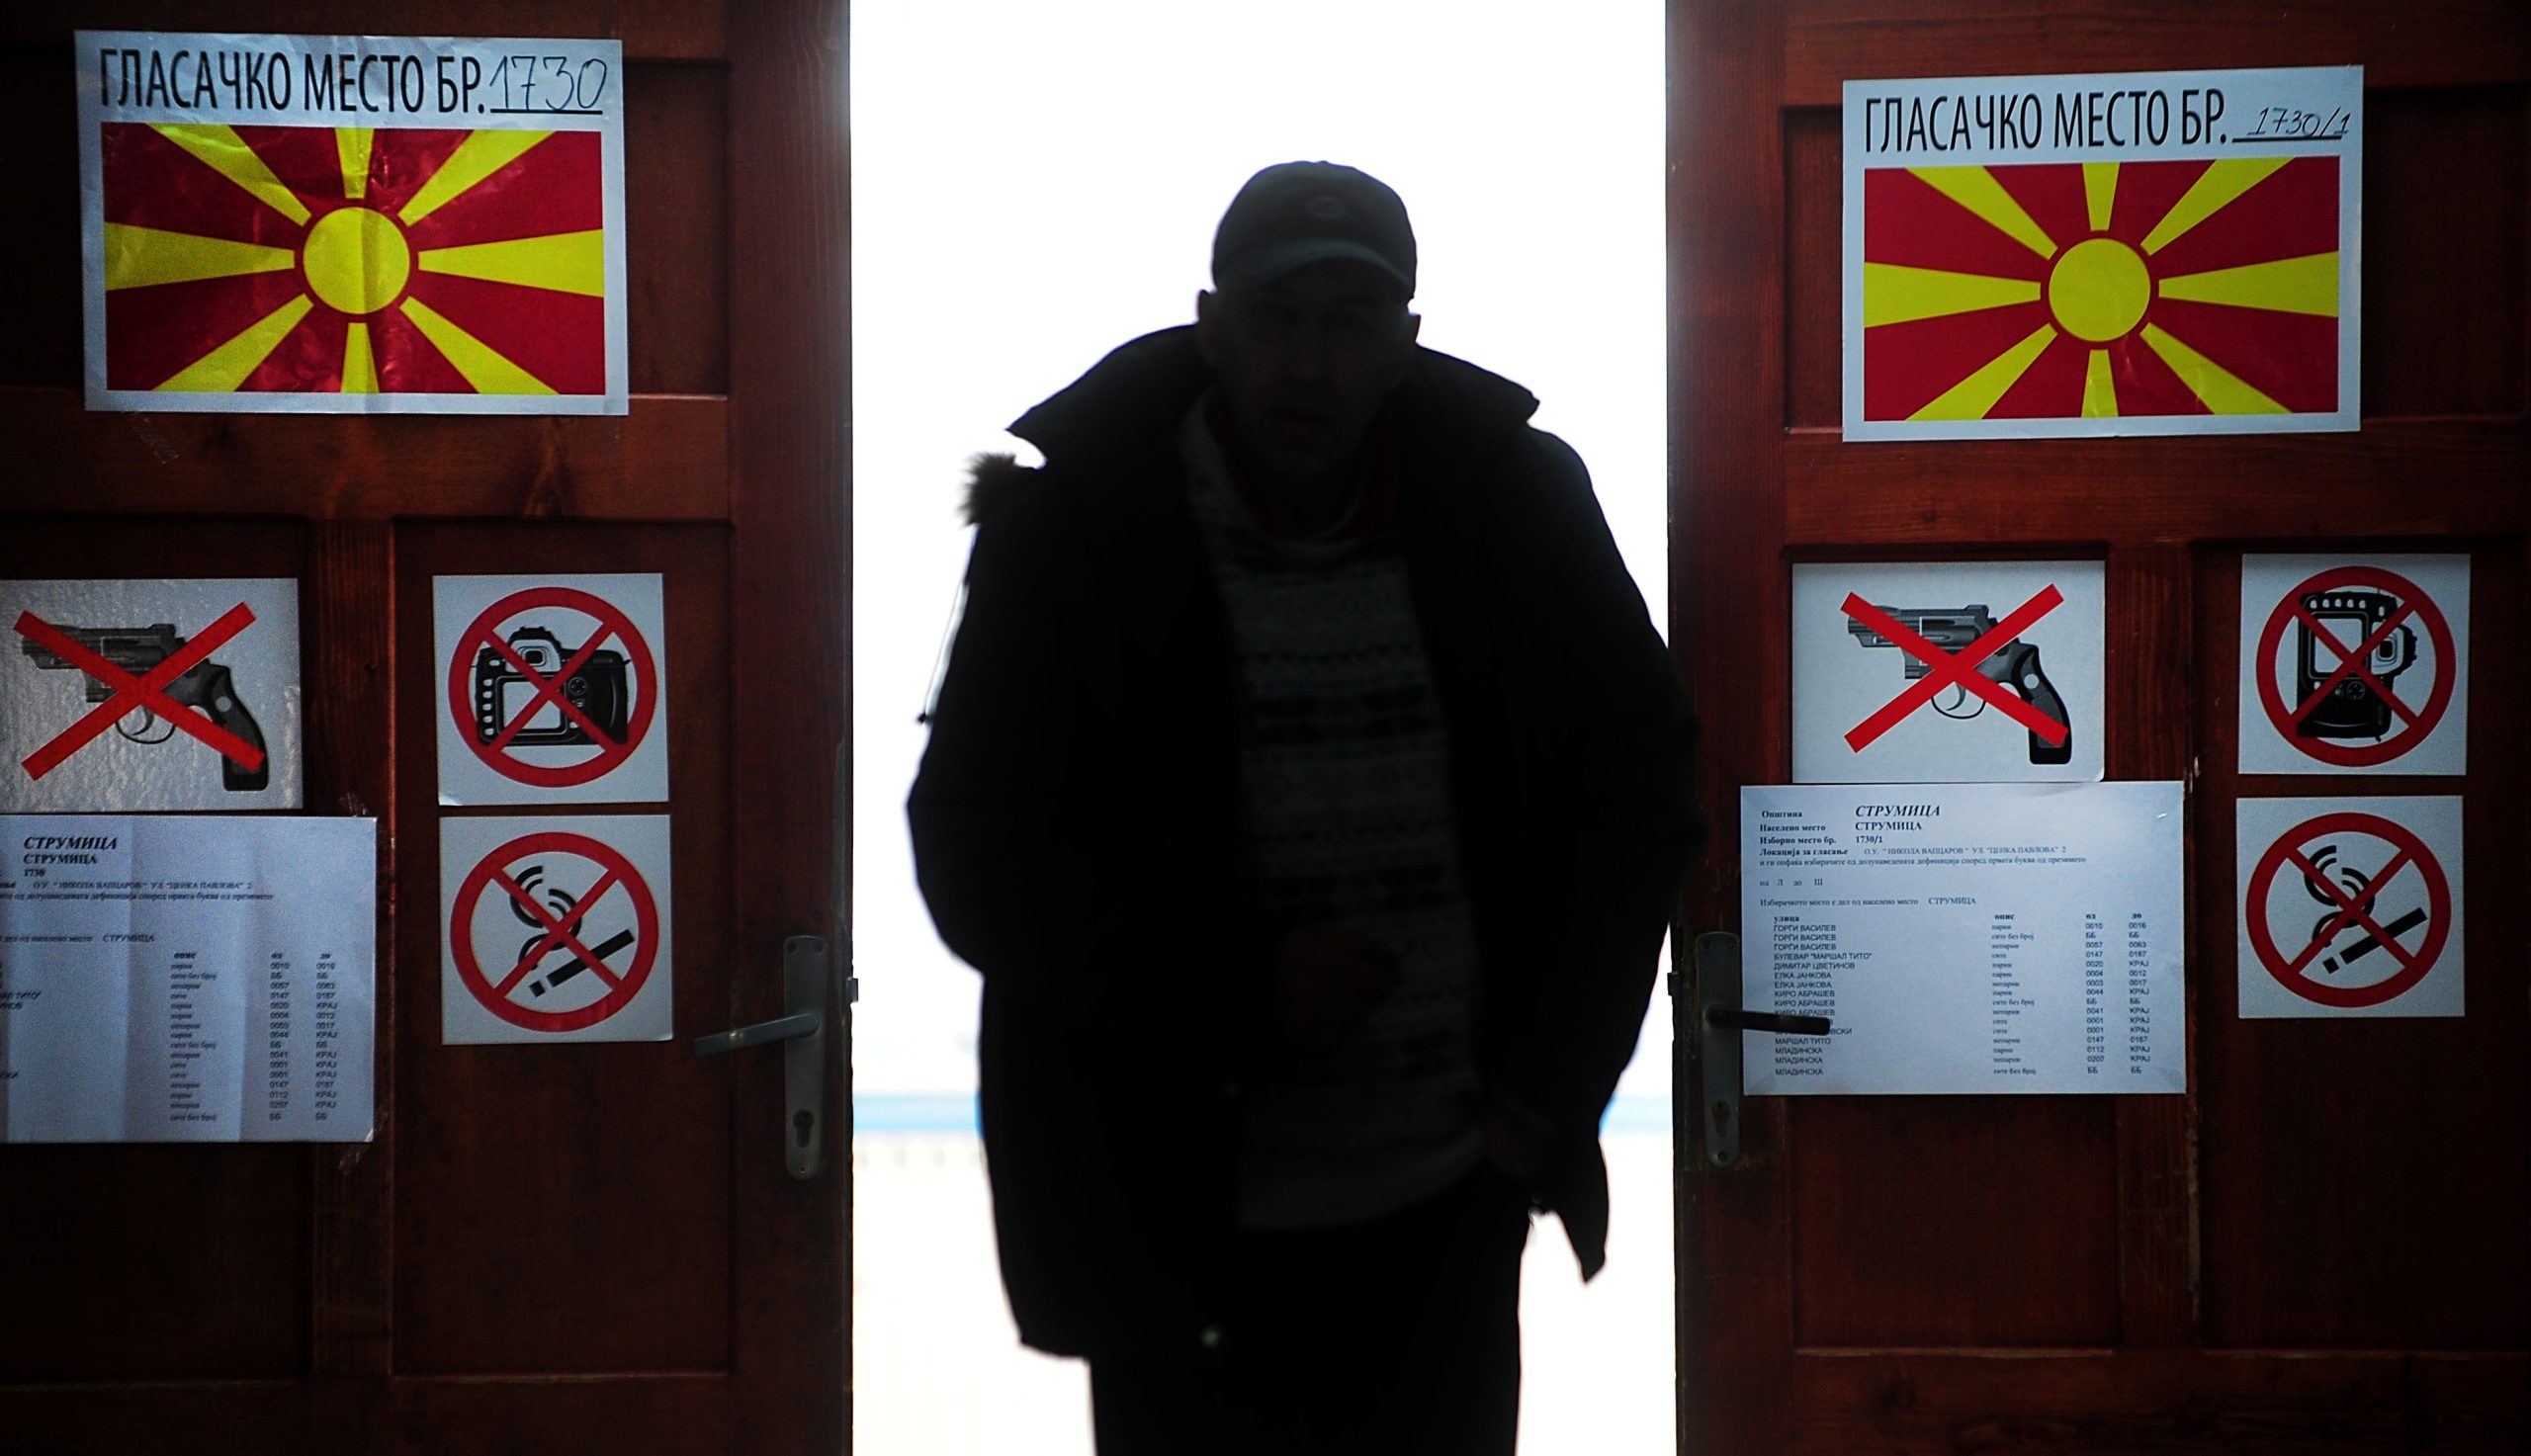 Σκόπια: Έκλεισαν οι κάλπες – Χαμηλή η συμμετοχή για τις προεδρικές εκλογές